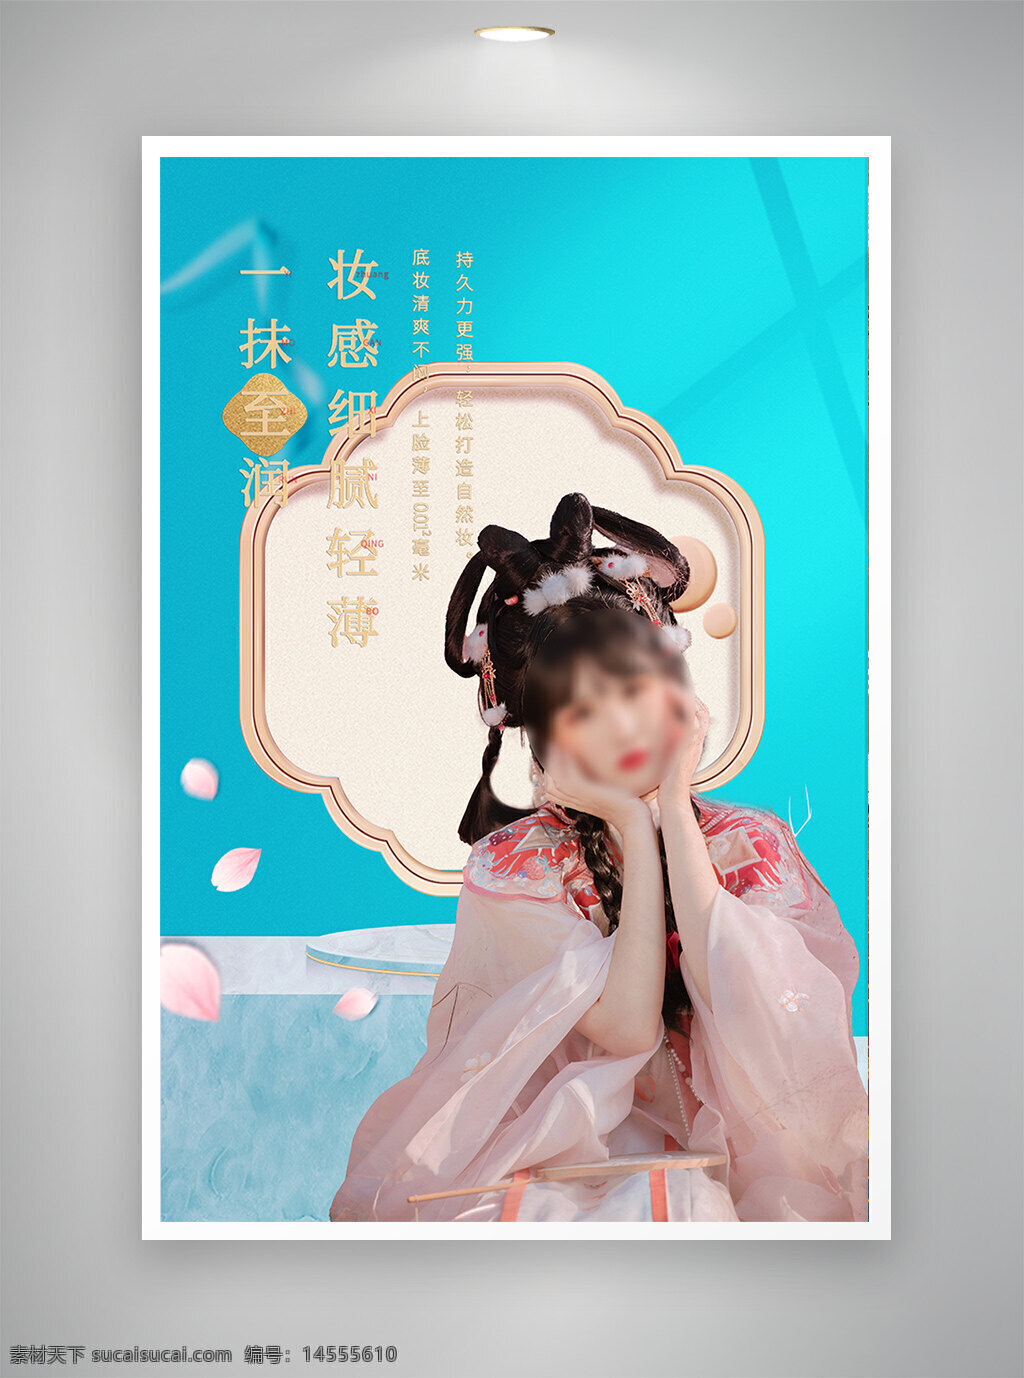 中国风海报 古风海报 促销海报 节日海报 美妆海报